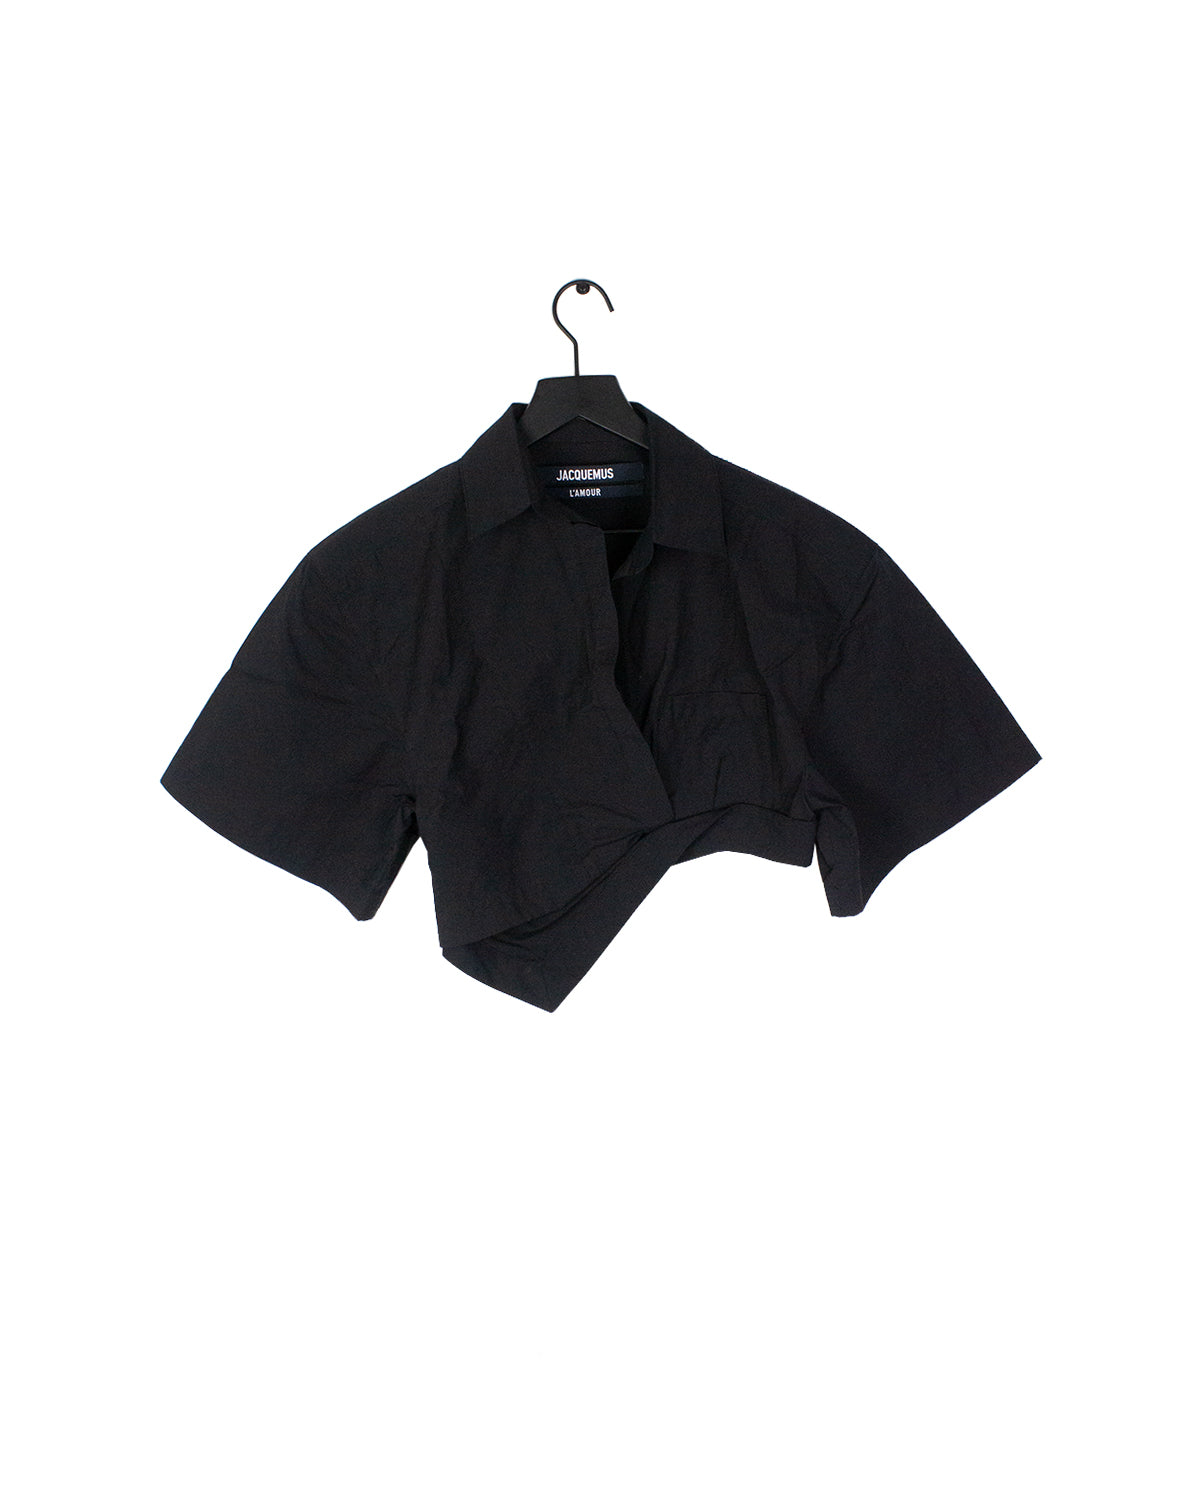 jacquemus black la chemise capri short sleeve shirt front Coachella Outfit Inspo